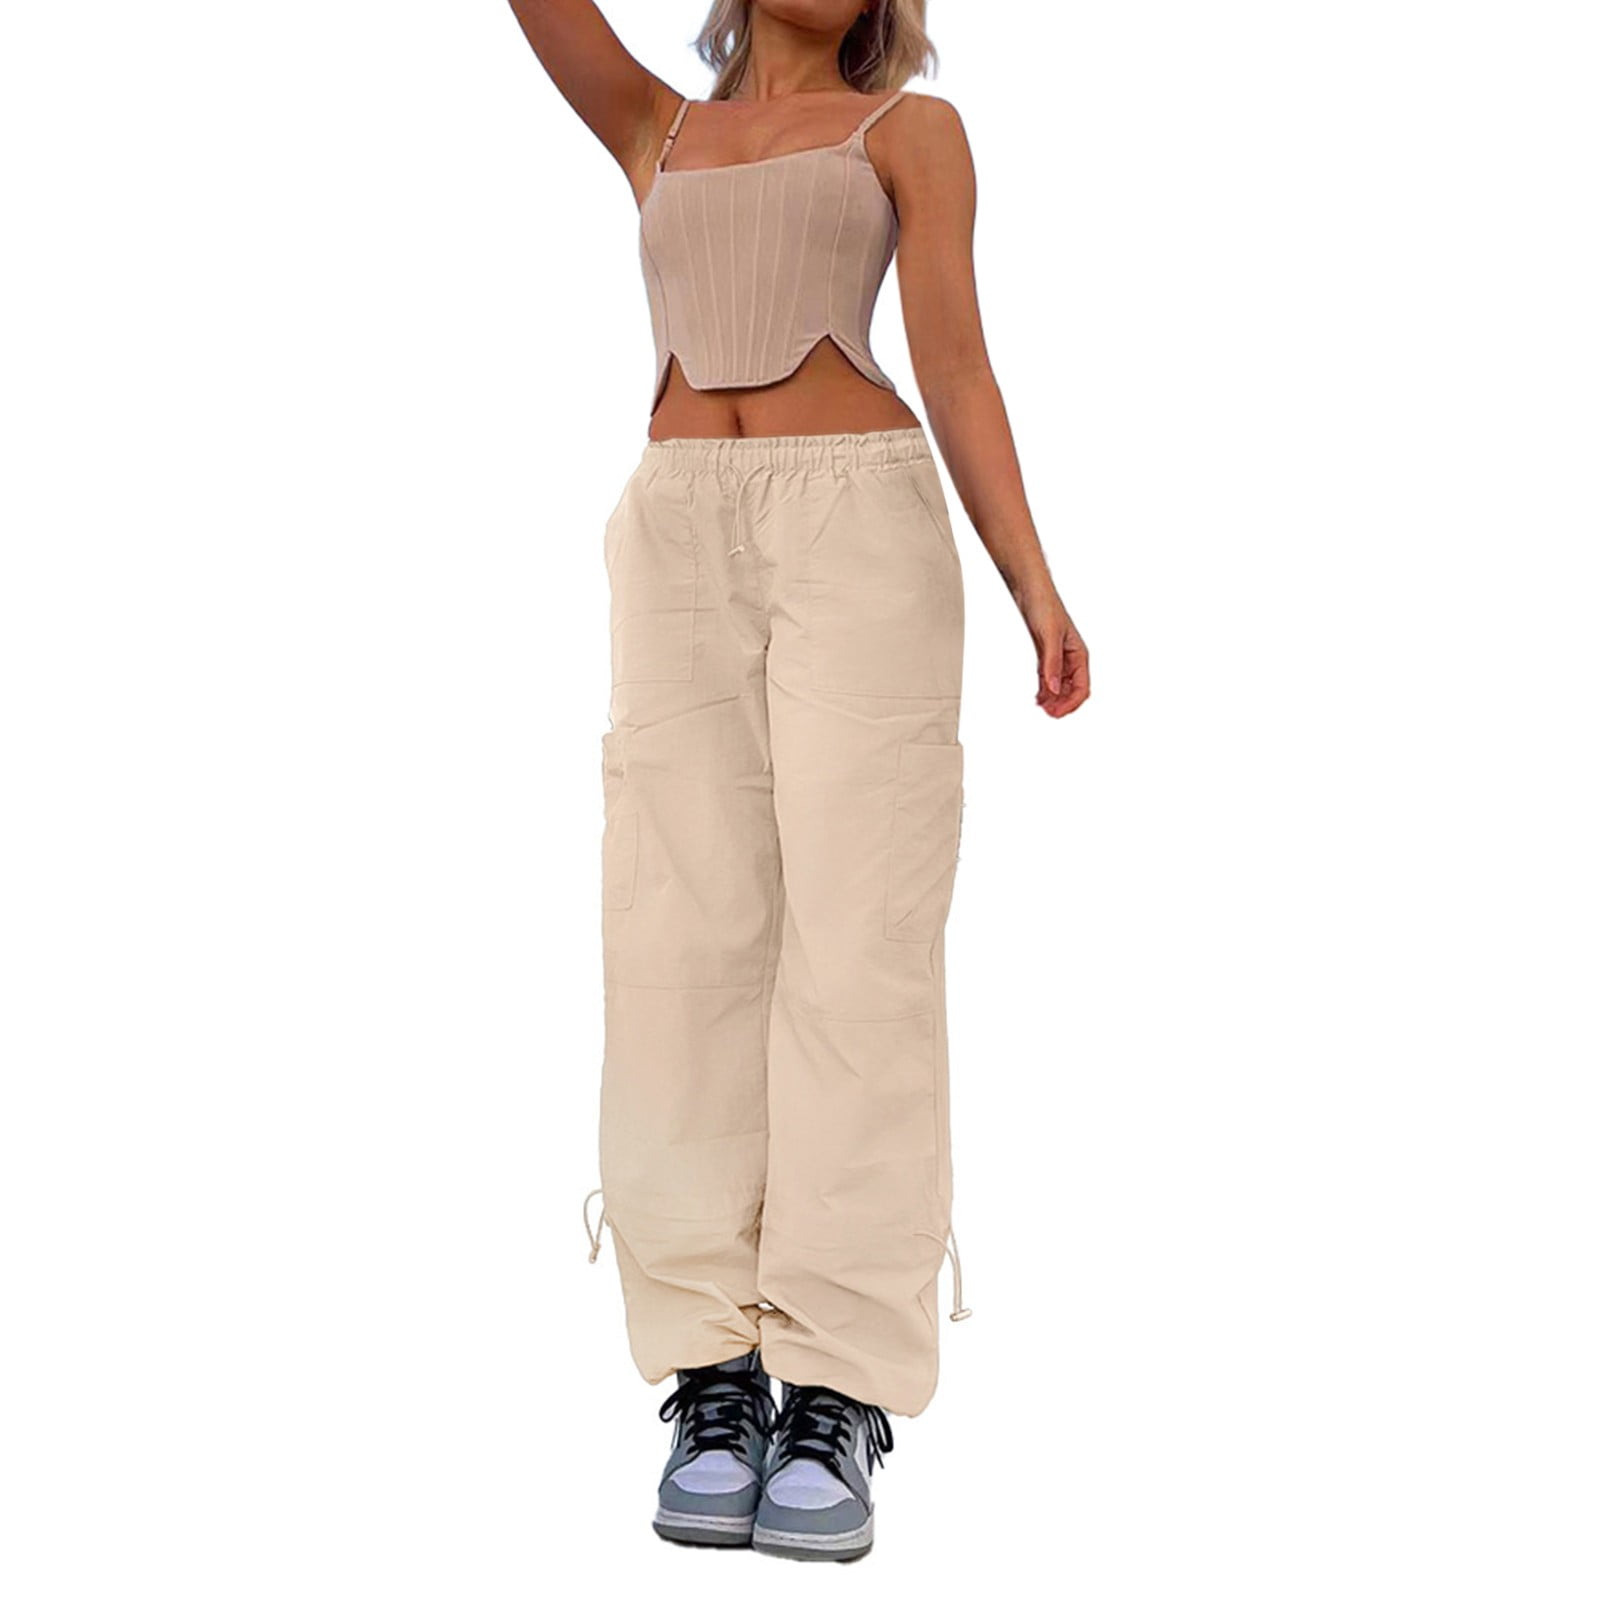 2DXuixsh Pants for Women Peg Pants with Tie Womens Cargo Pants